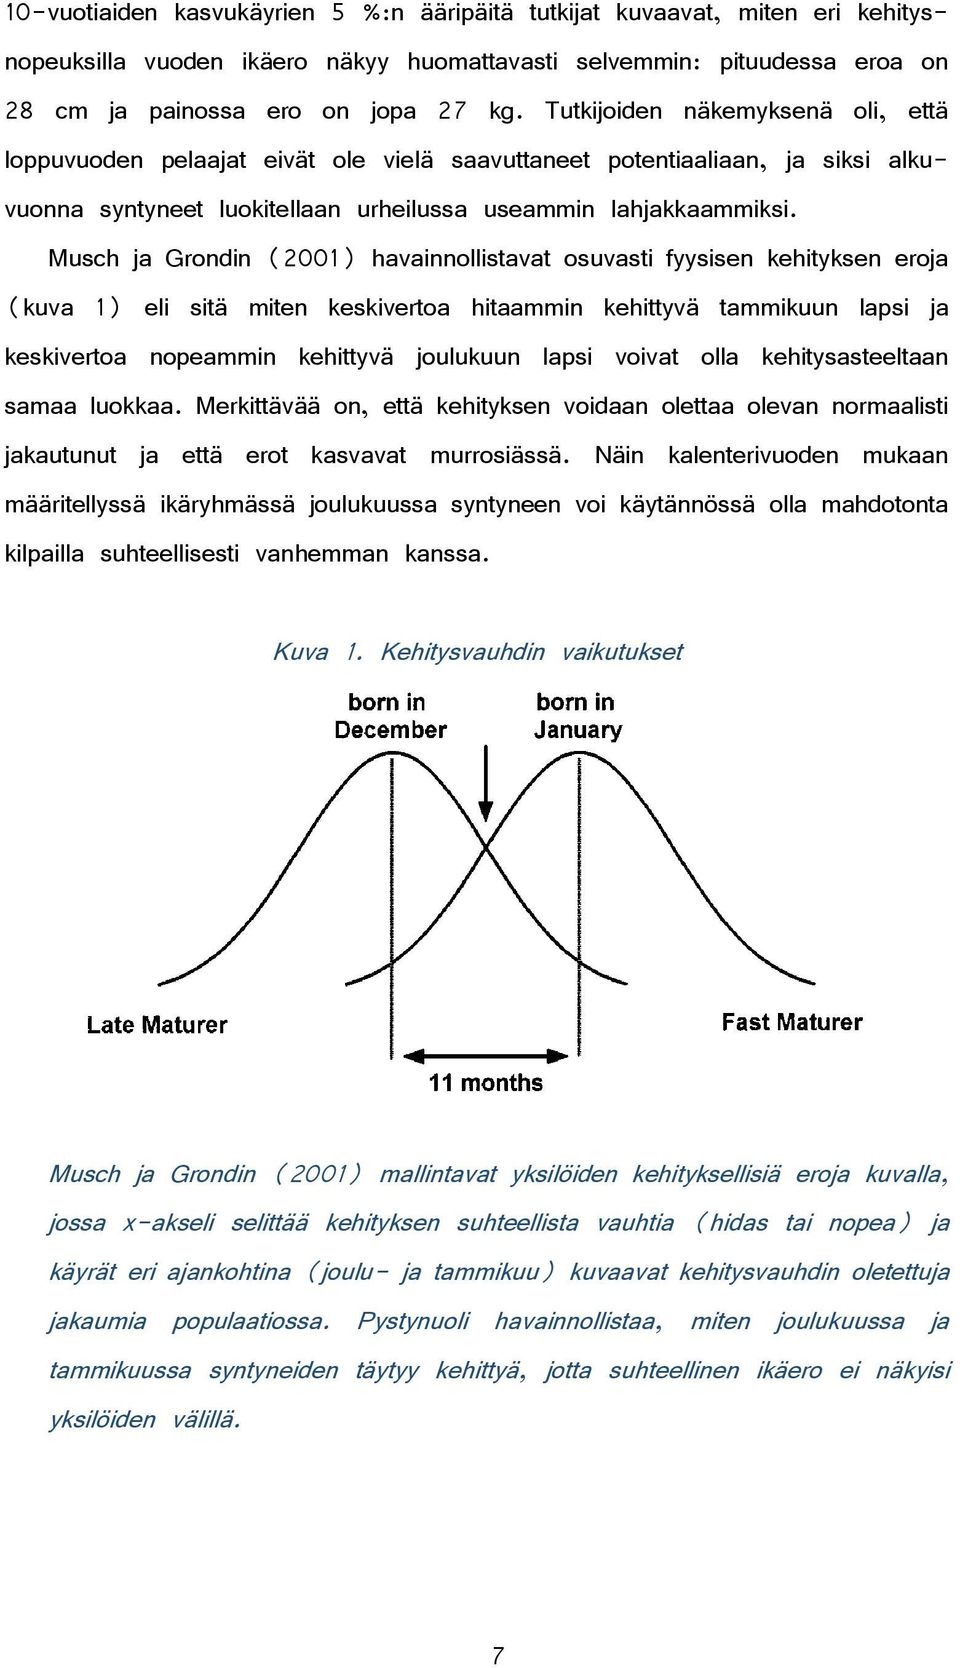 Musch ja Grondin (2001) havainnollistavat osuvasti fyysisen kehityksen eroja (kuva 1) eli sitä miten keskivertoa hitaammin kehittyvä tammikuun lapsi ja keskivertoa nopeammin kehittyvä joulukuun lapsi